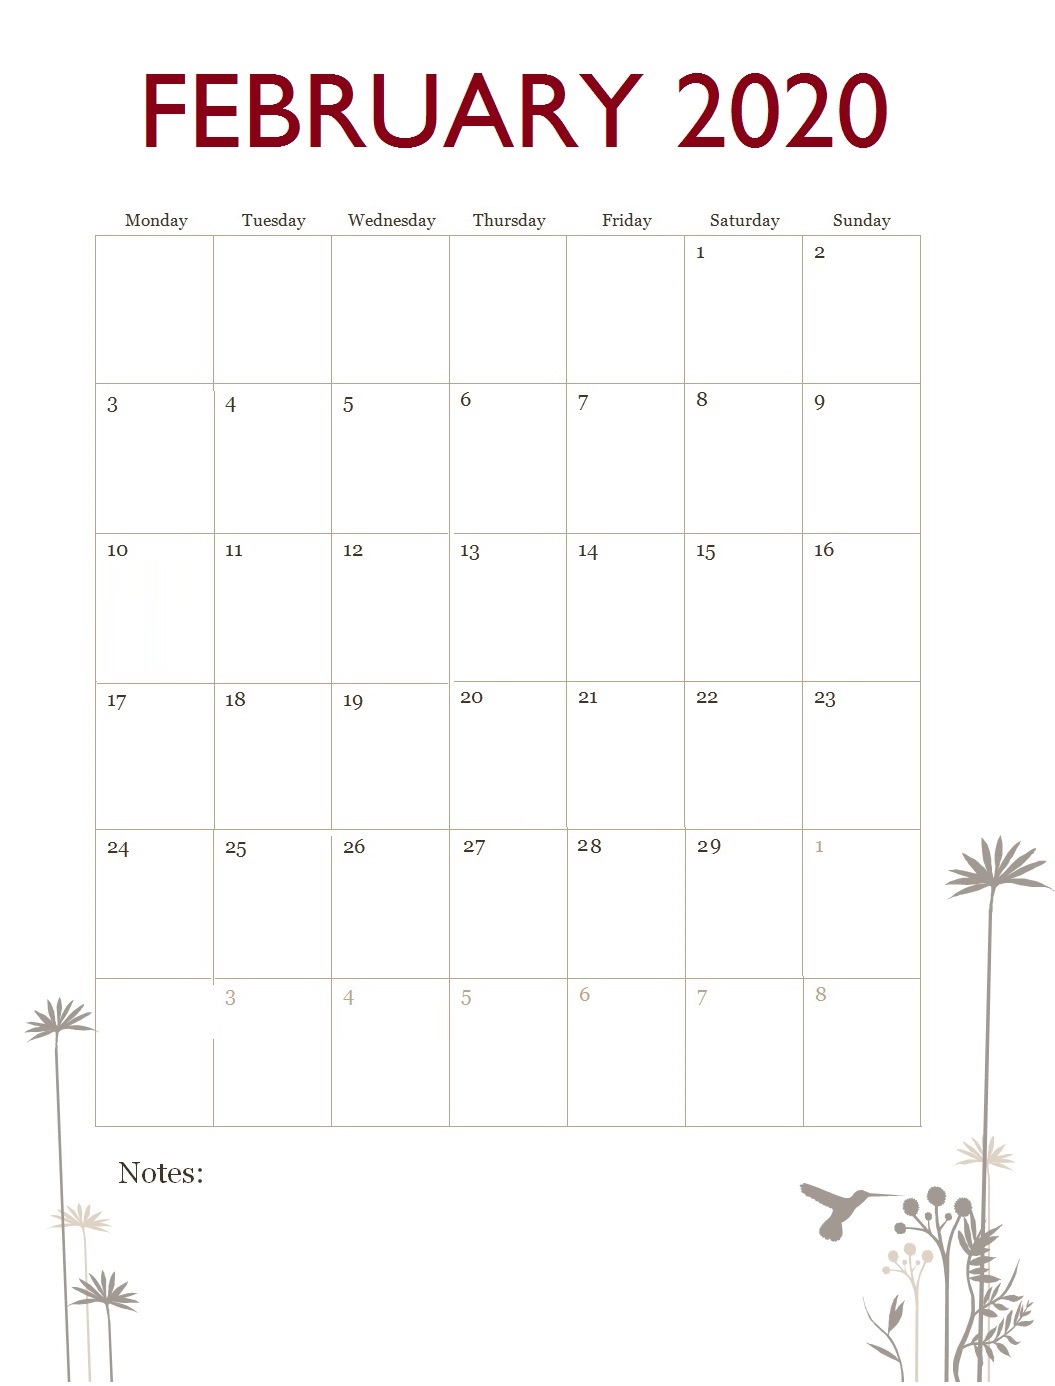 February 2020 Office Desk Calendar